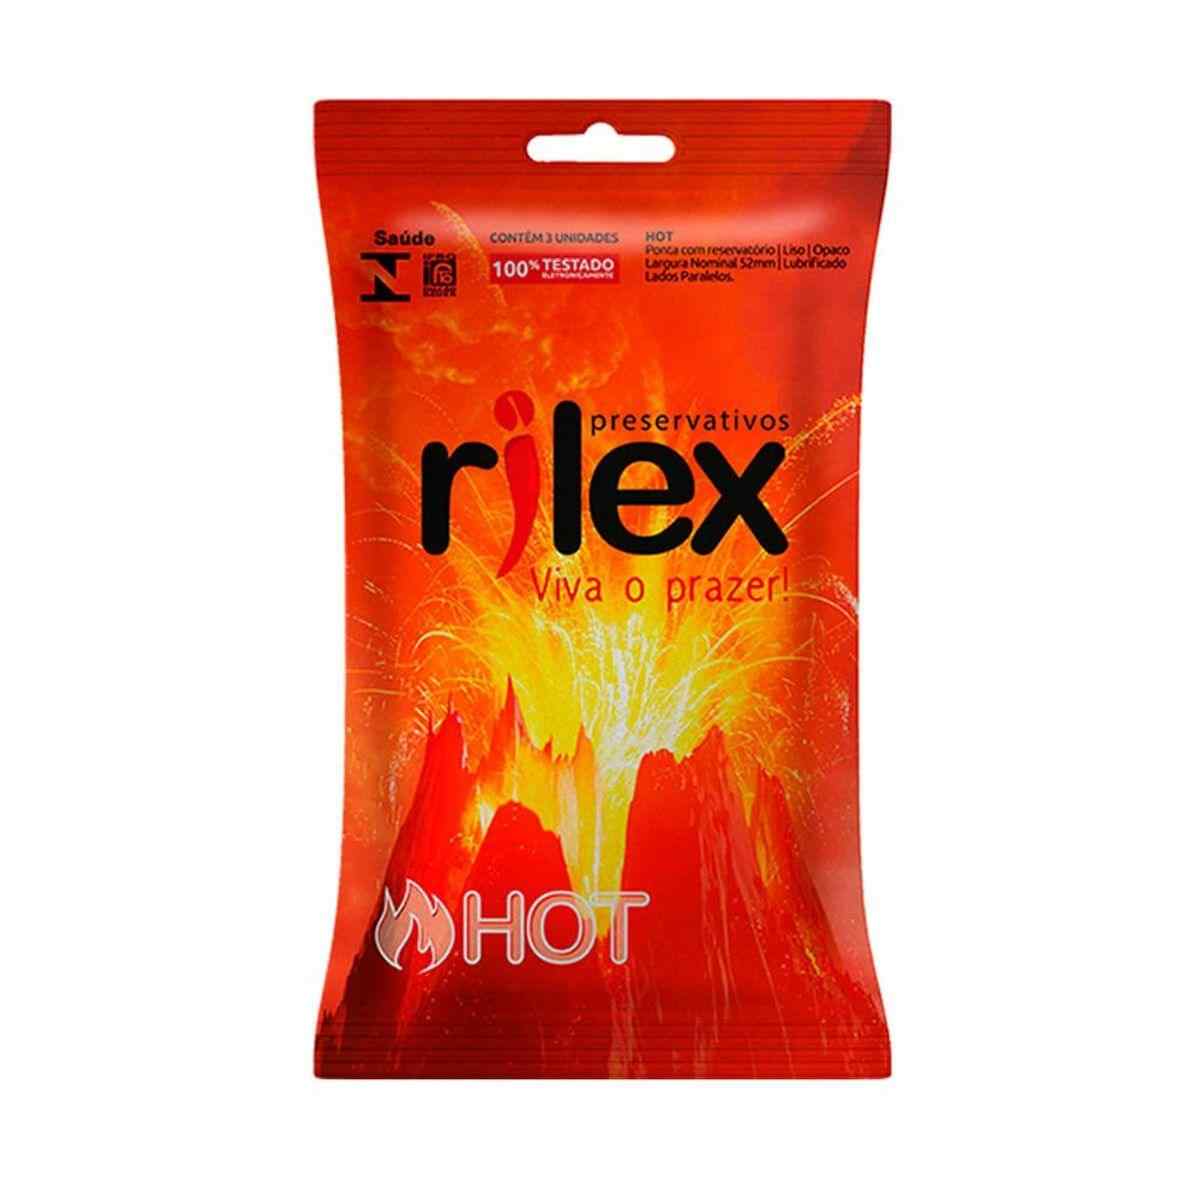 Camisinha Rilex preservativo Hot esquenta o clima